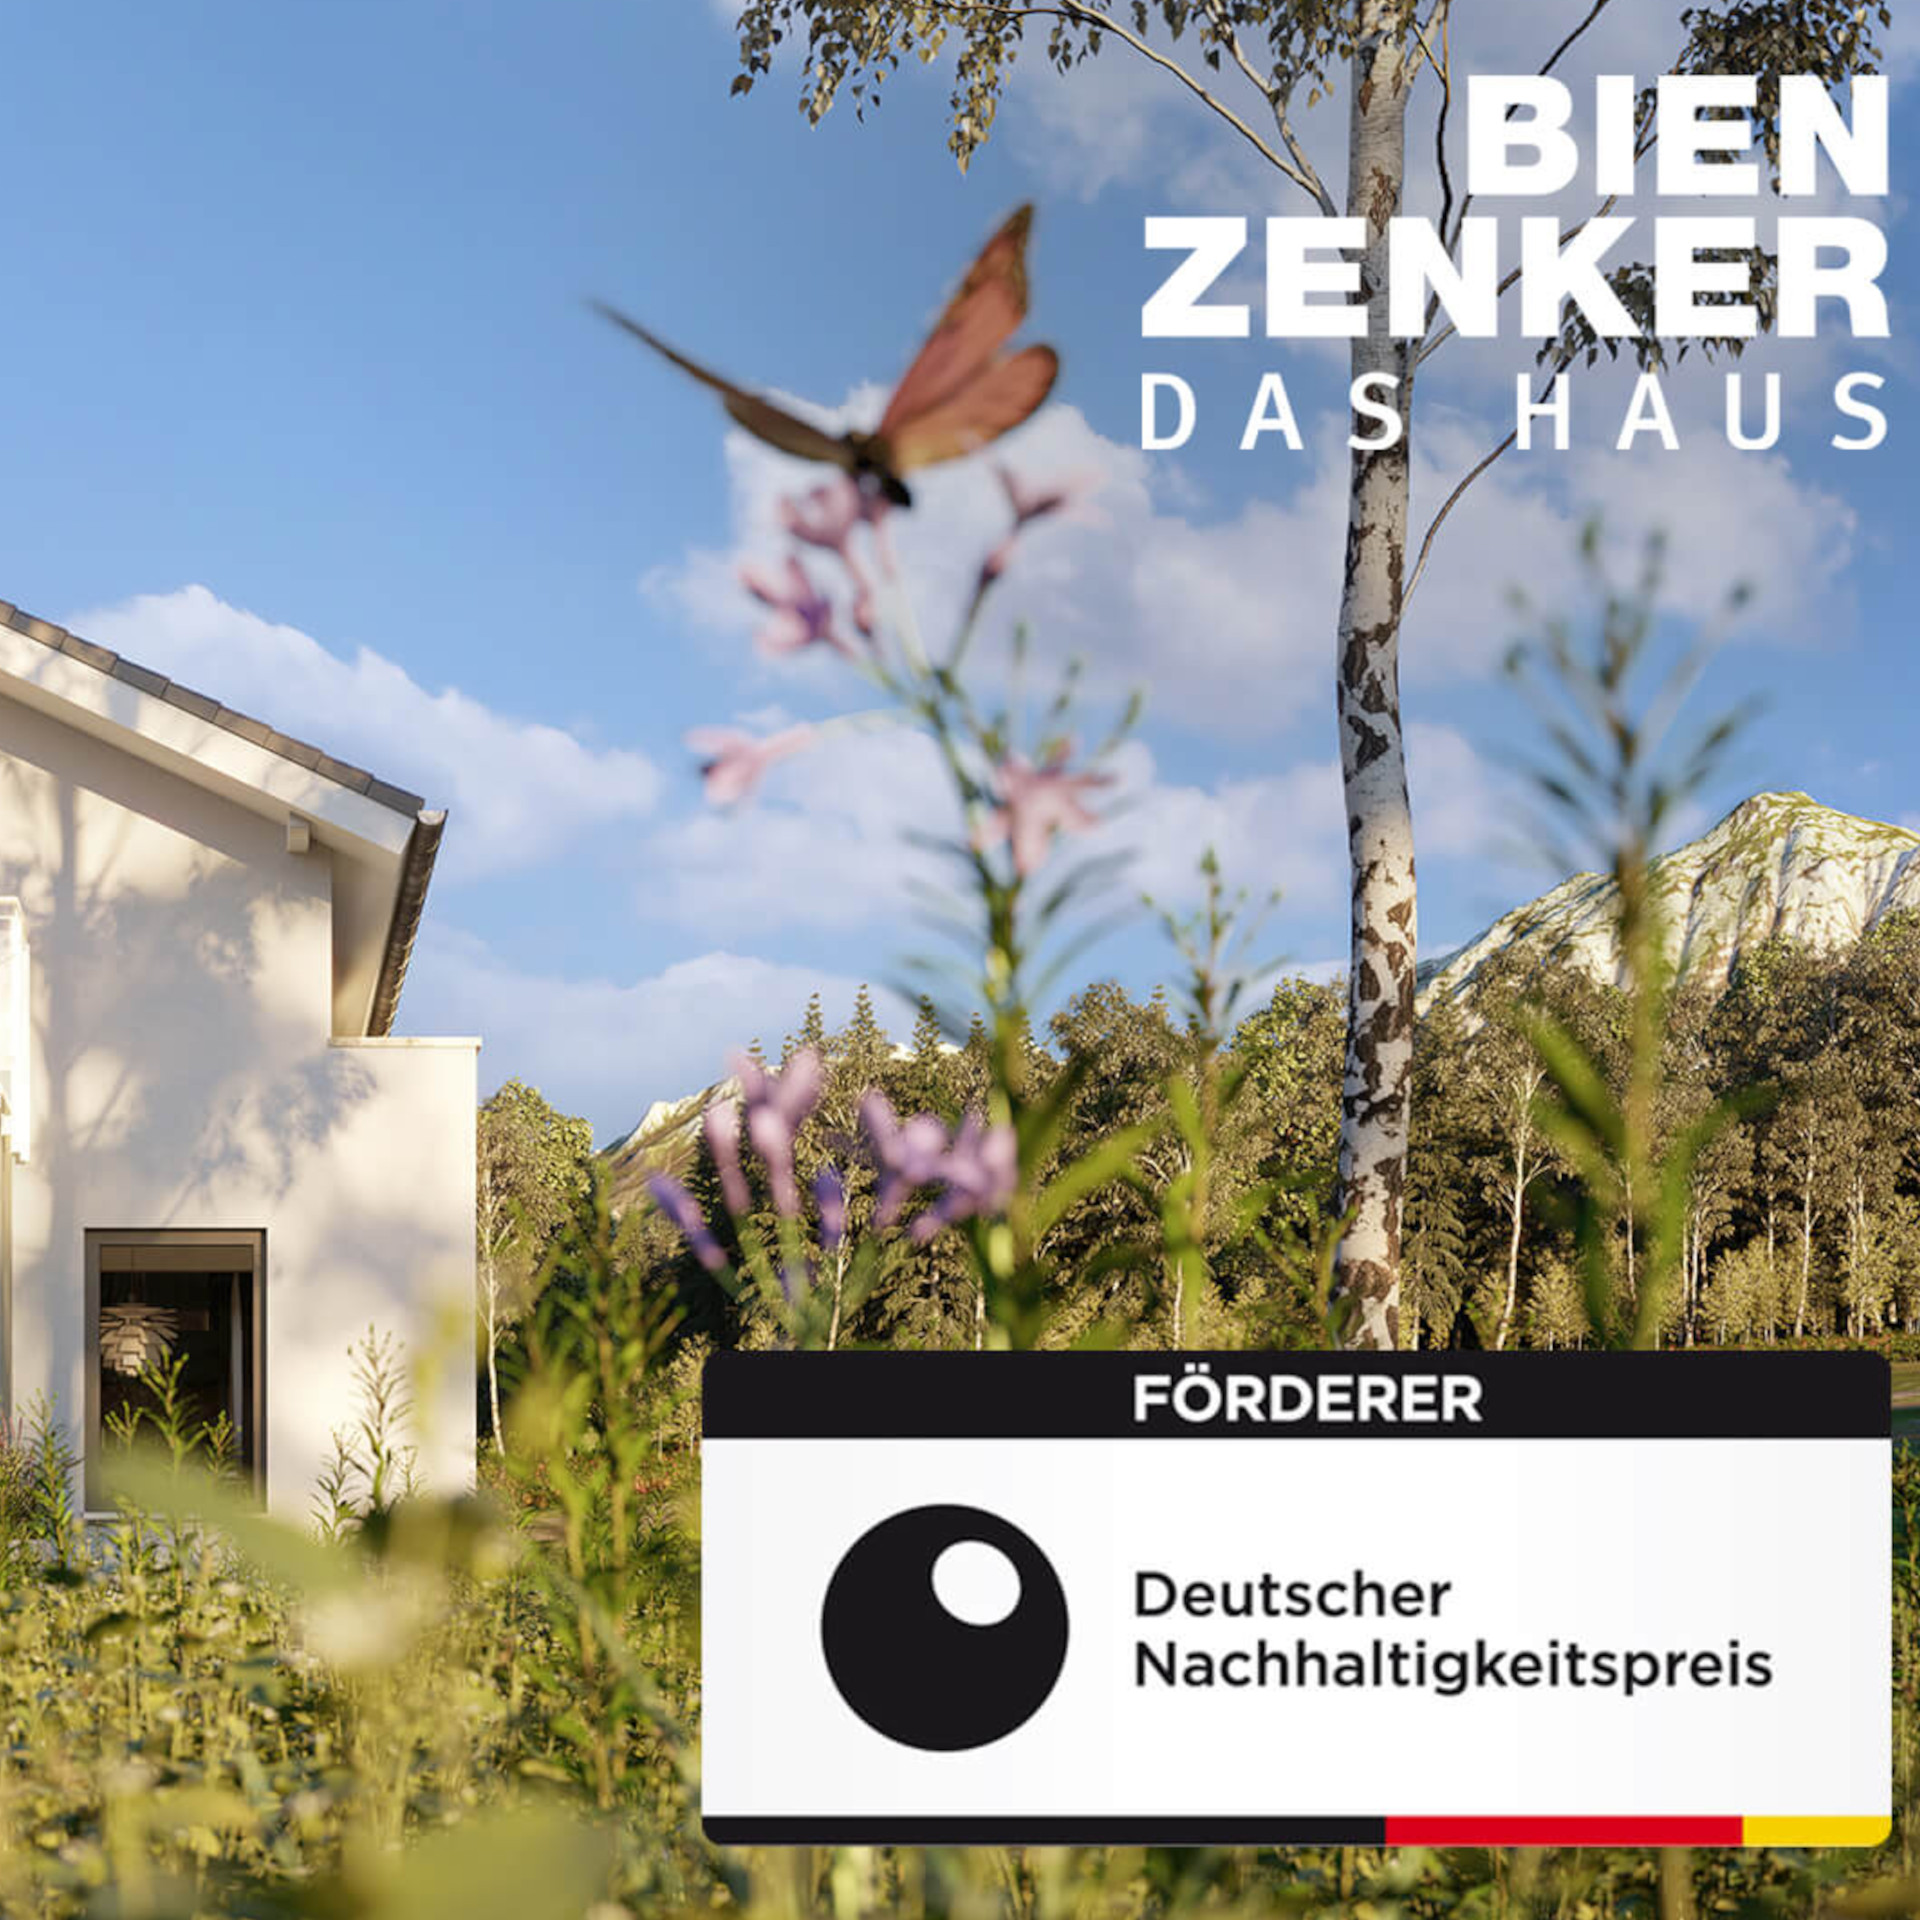 Bien-Zenker engagiert sich als Förderer des Deutschen Nachhaltigkeitspreises 2022